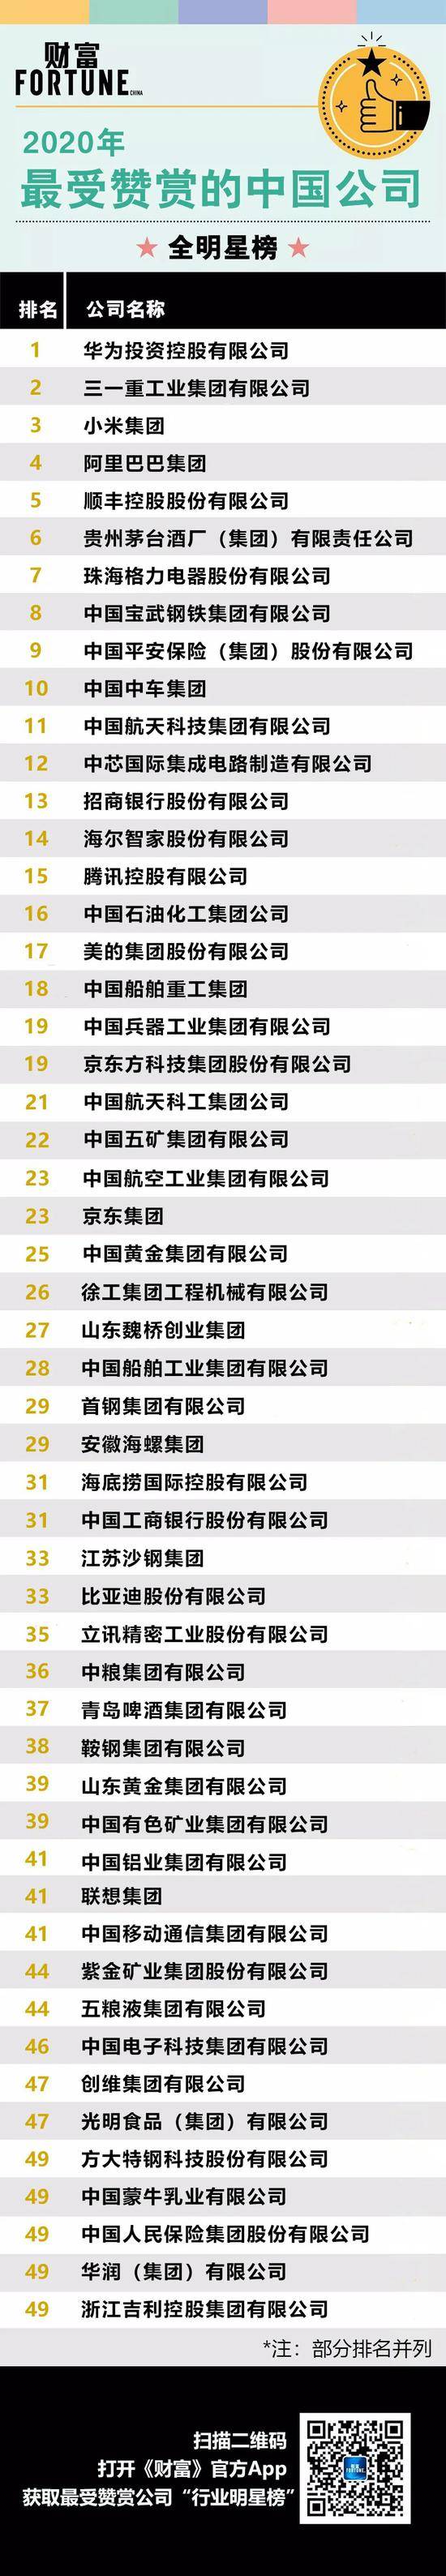 2020年《财富》最受赞赏的中国公司:华为、小米、阿里上榜